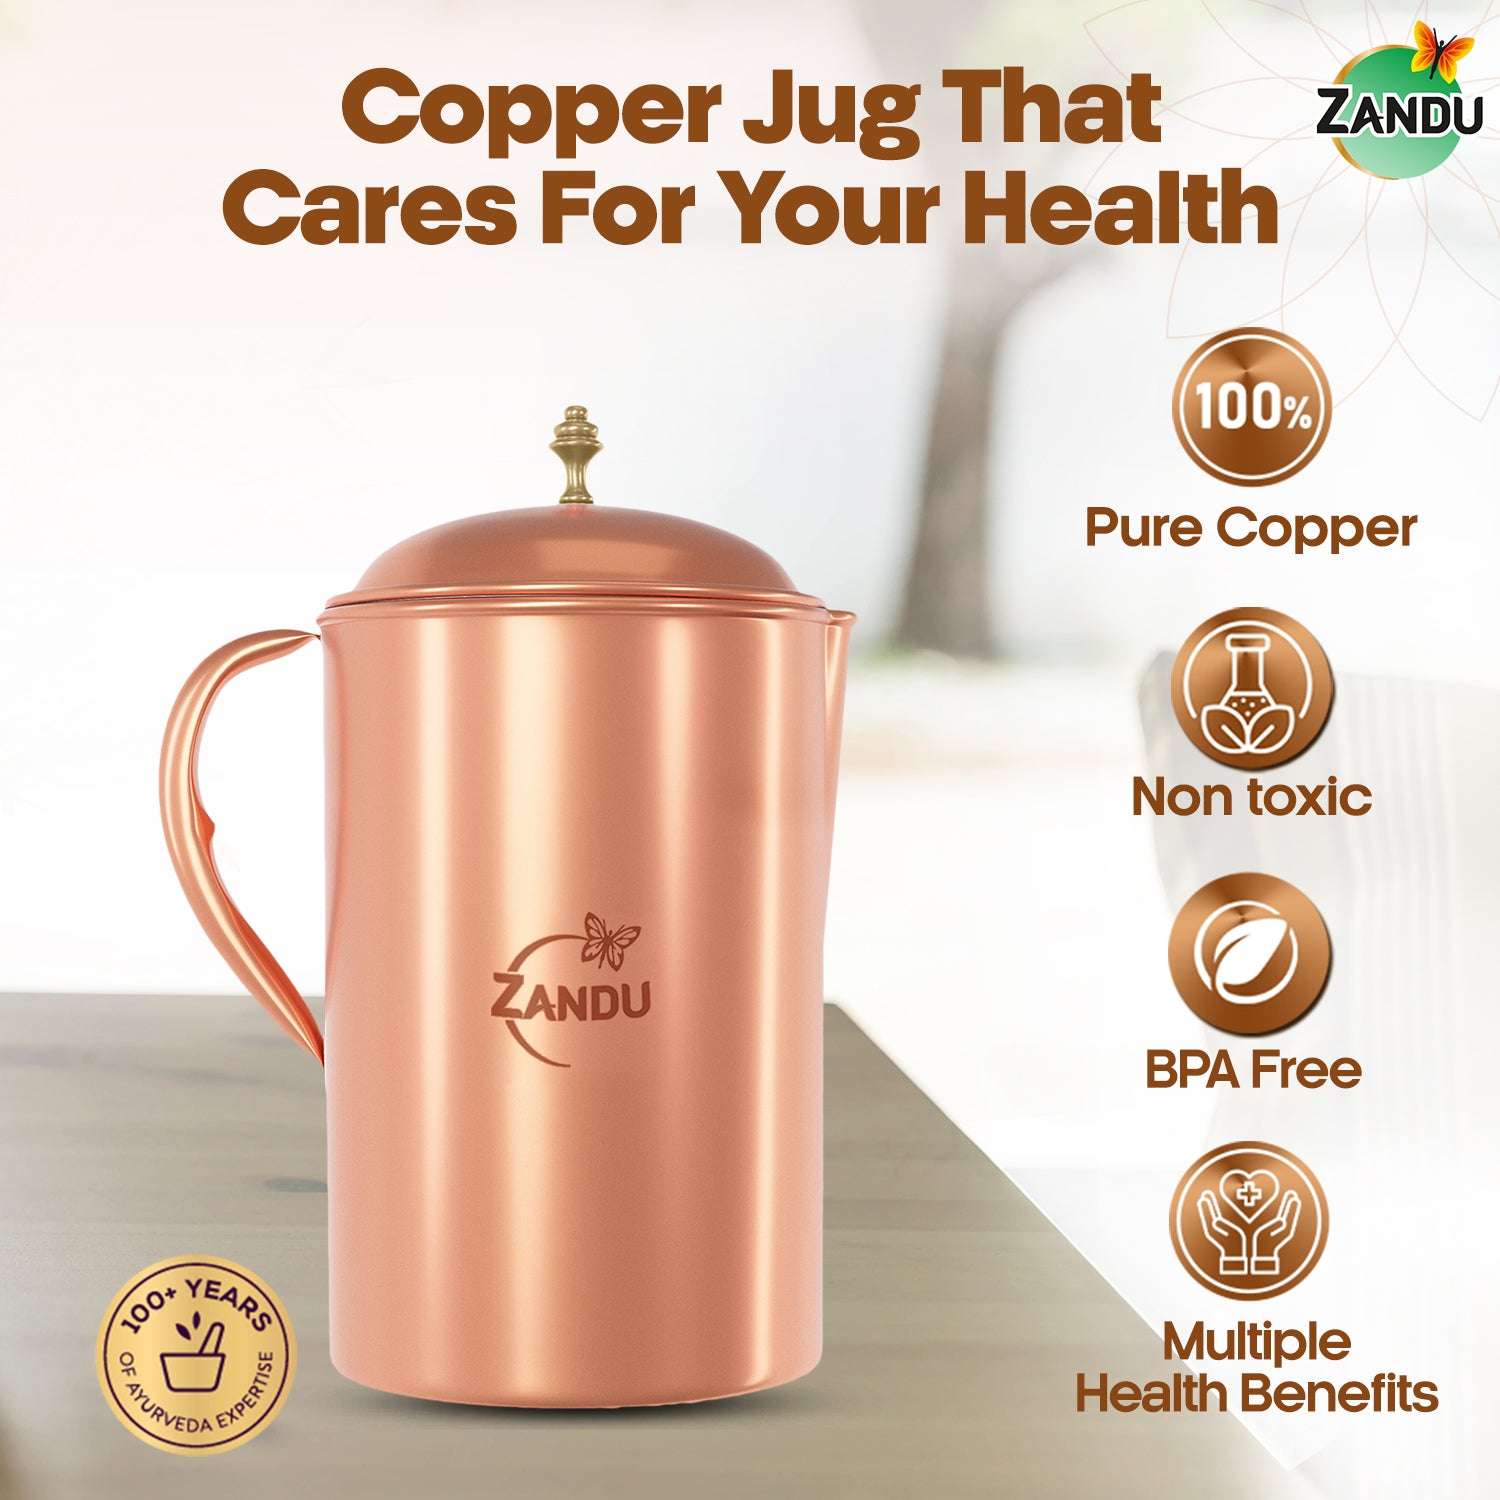 Zandu Copper Jug benefits